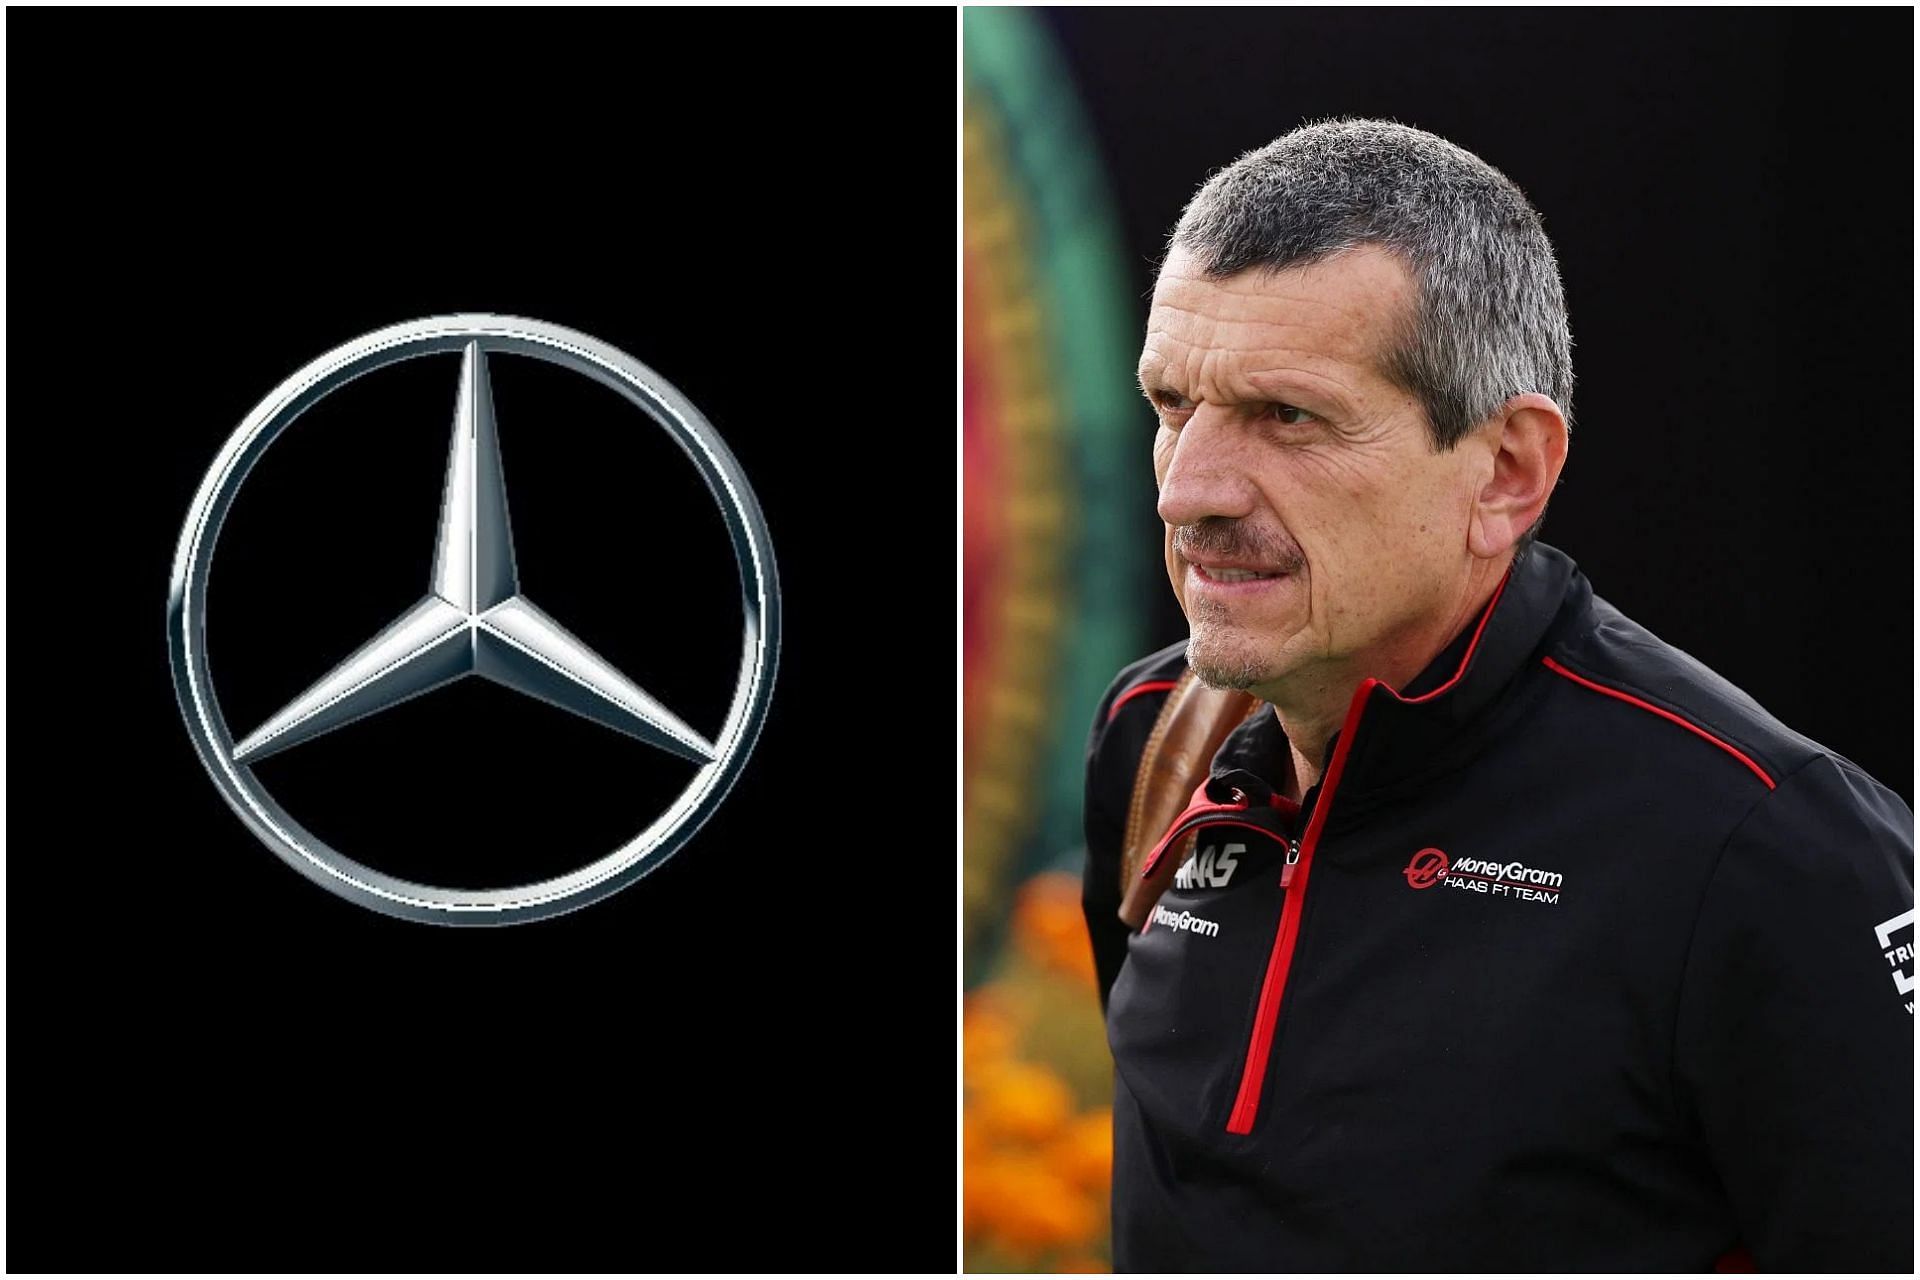 Guenther Steiner reckons Mercedes